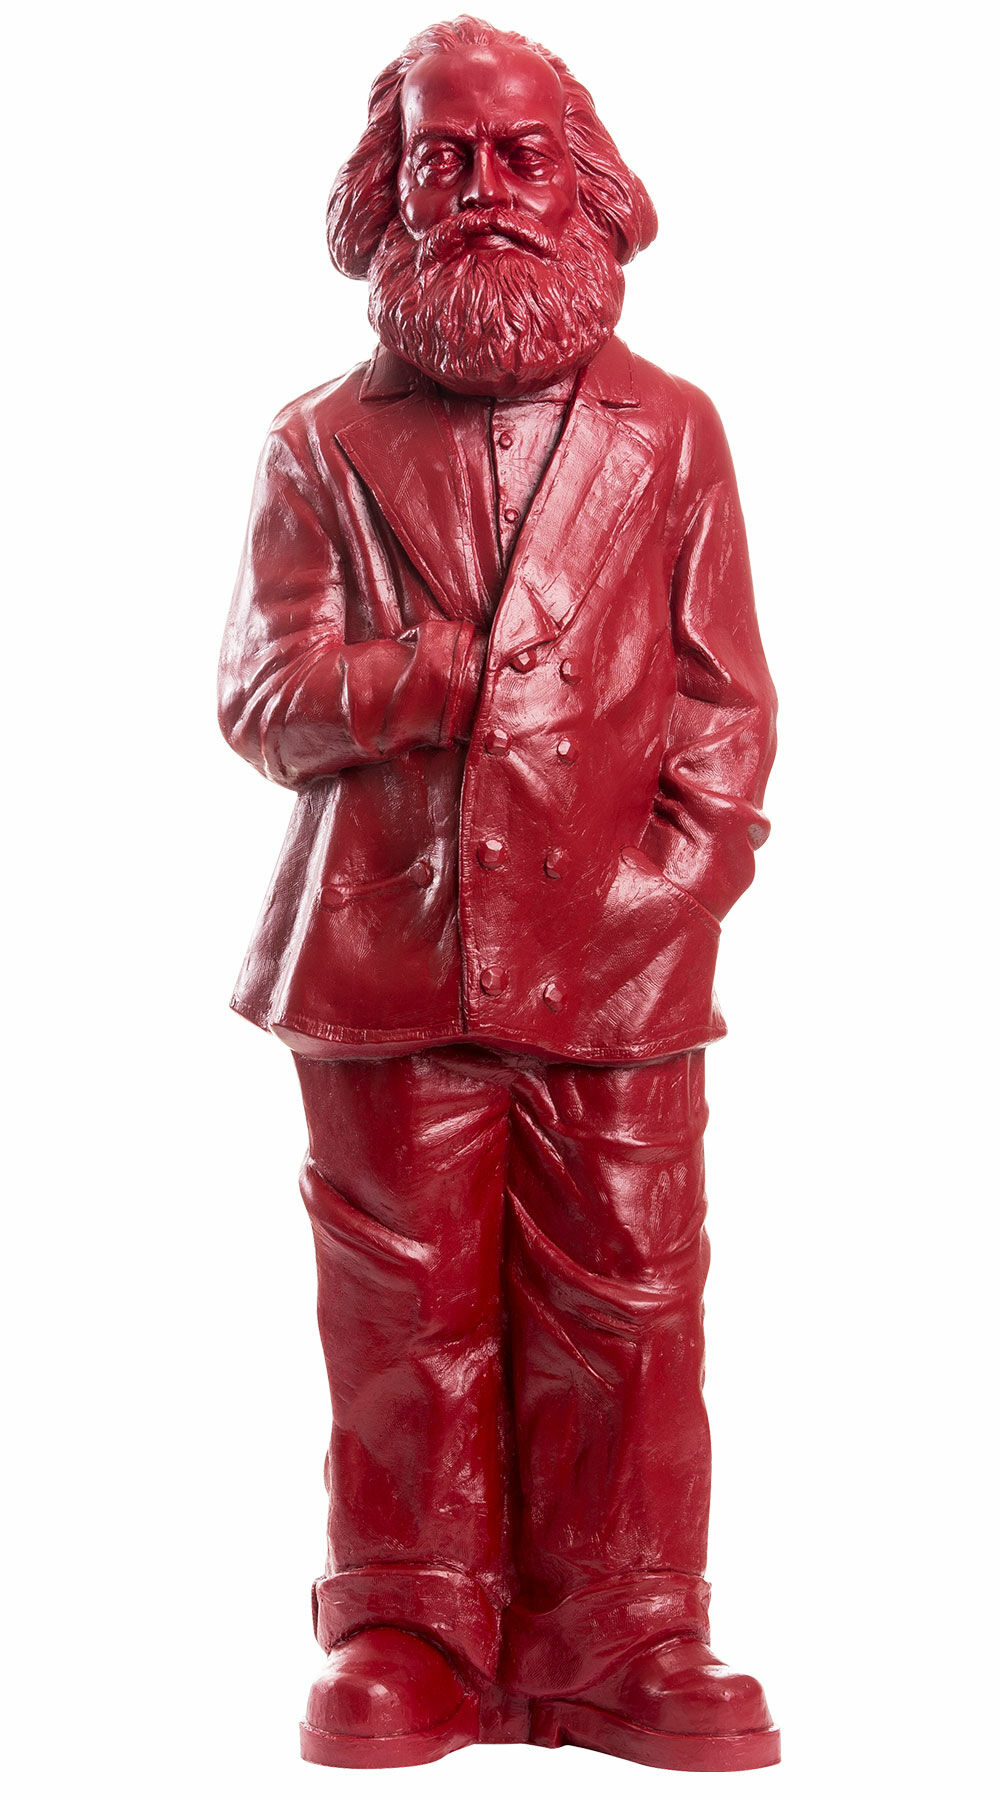 Skulptur "Karl Marx", Version in Purpurrot von Ottmar Hörl